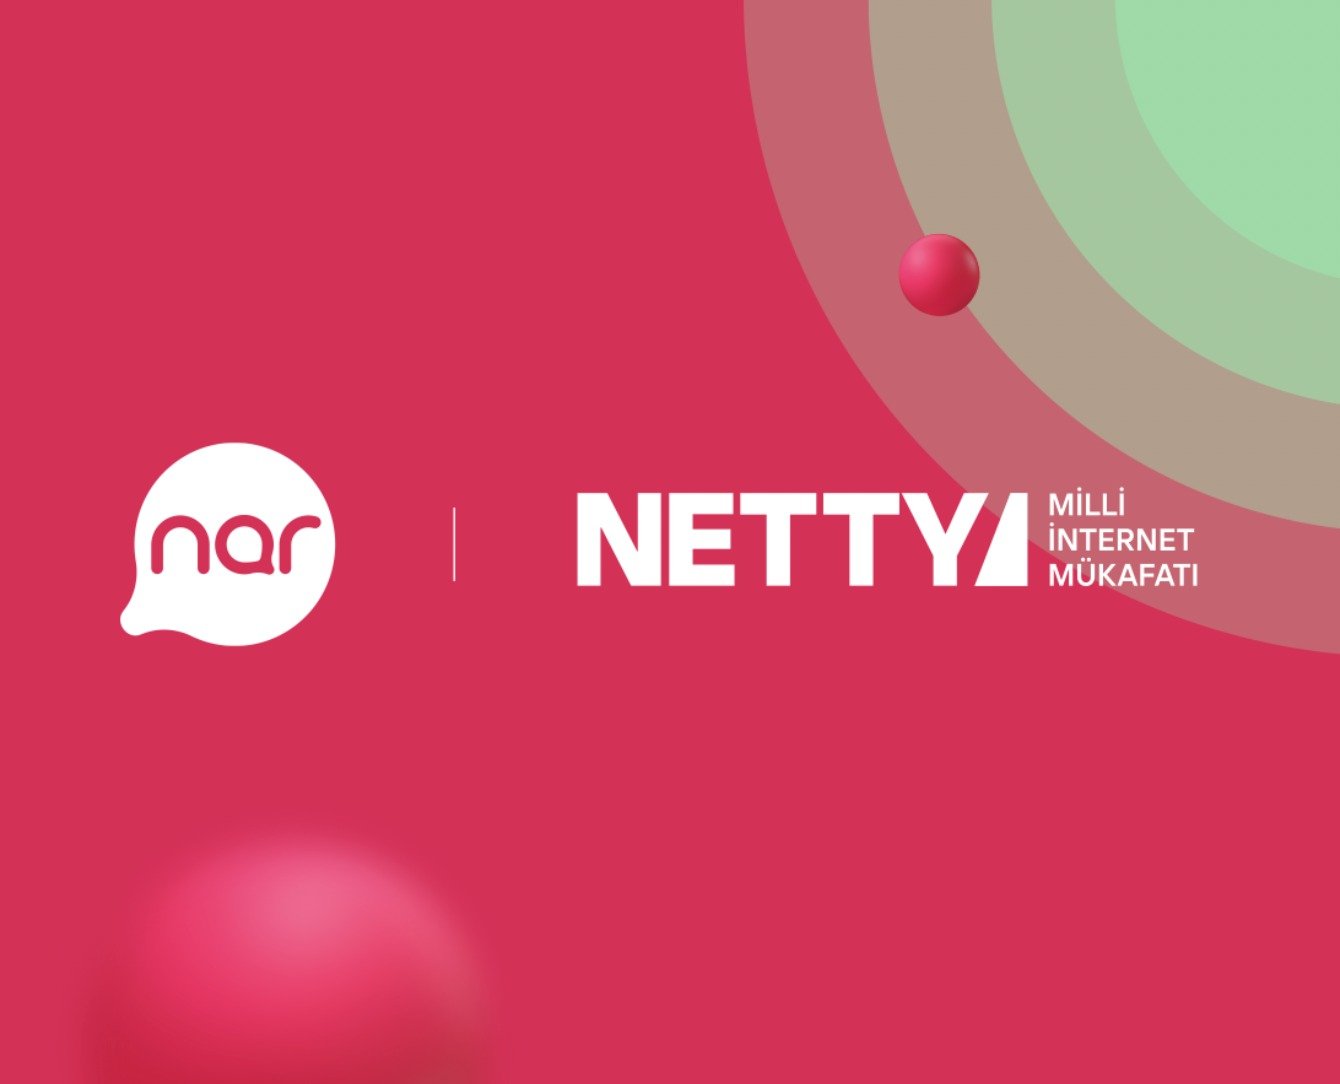 “Nar” və NETTY ən yaxşı internet layihələrini mükafatlandıracaq